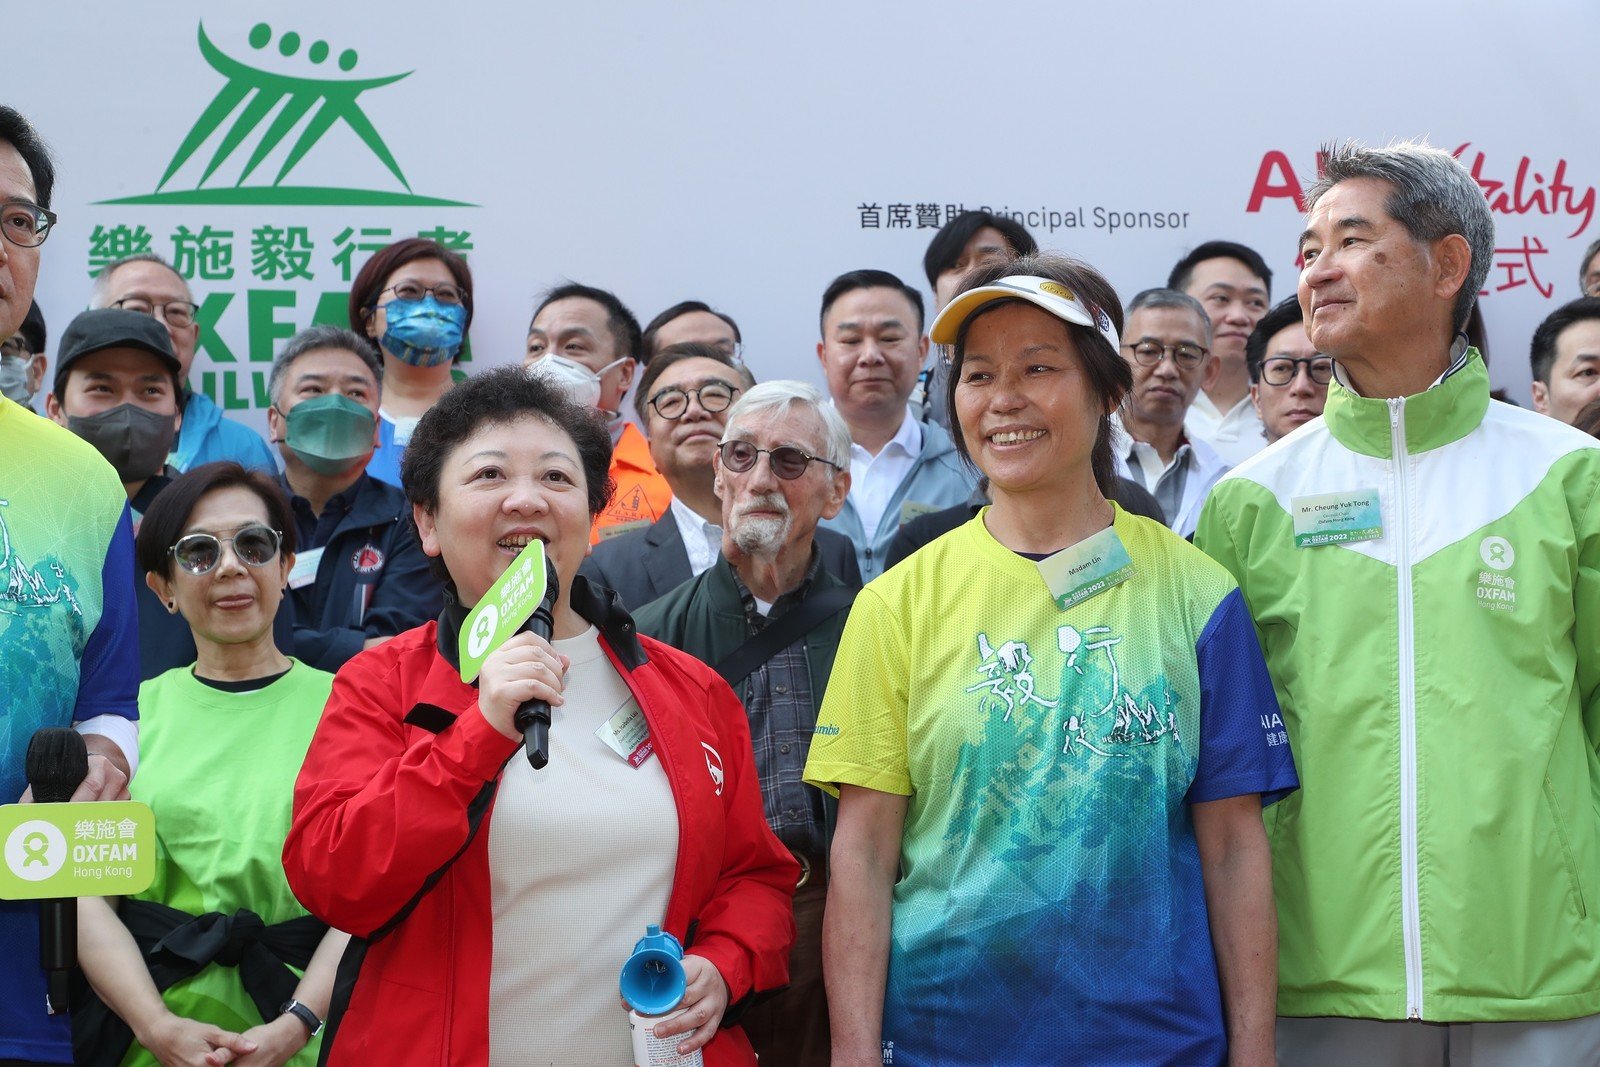 活动首席赞助代表友邦香港及澳门首席客户、策略及转型官刘锦珠在「乐施毅行者2022」起步礼上致辞。 